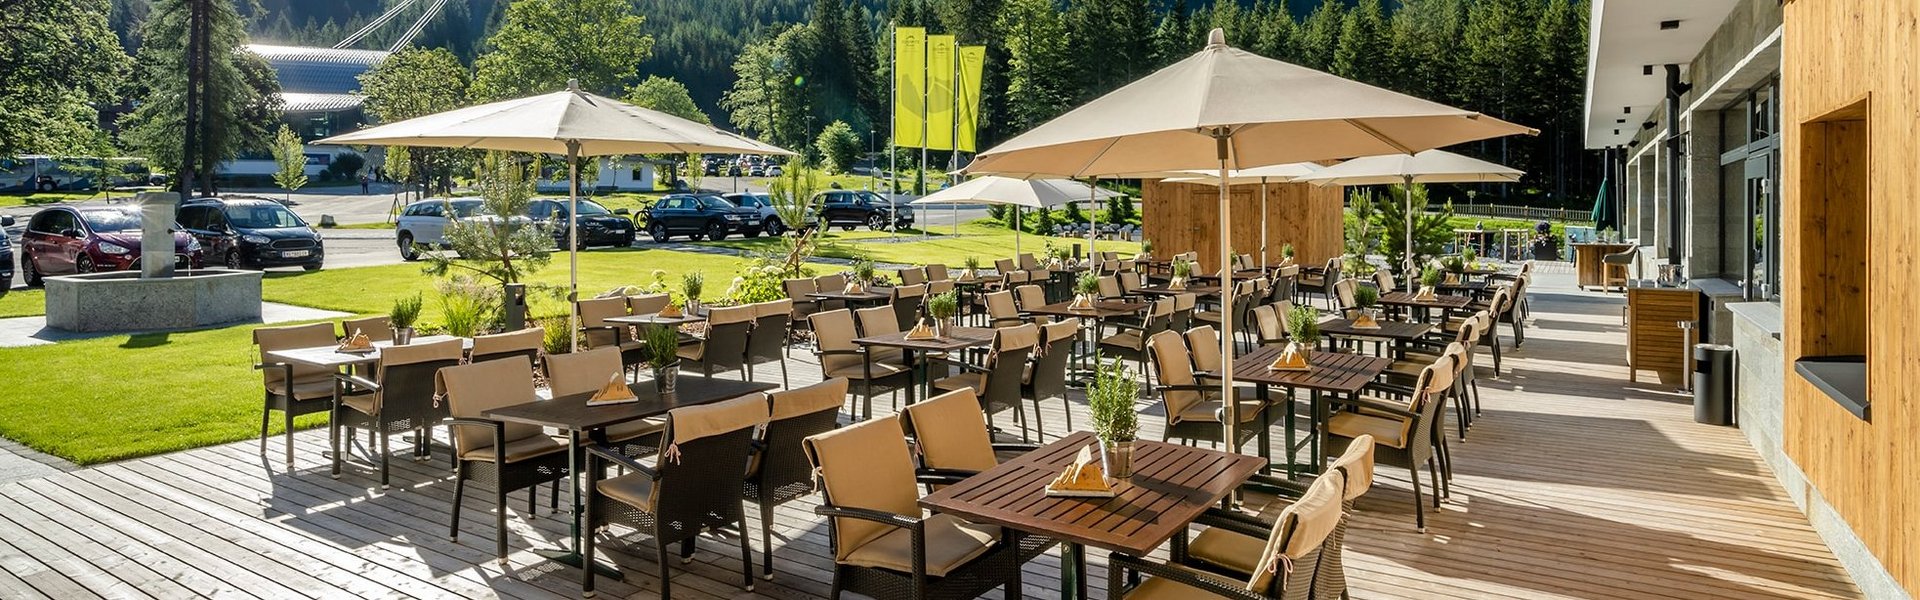 Terrasse vom Zugspitz Resort im Sommer